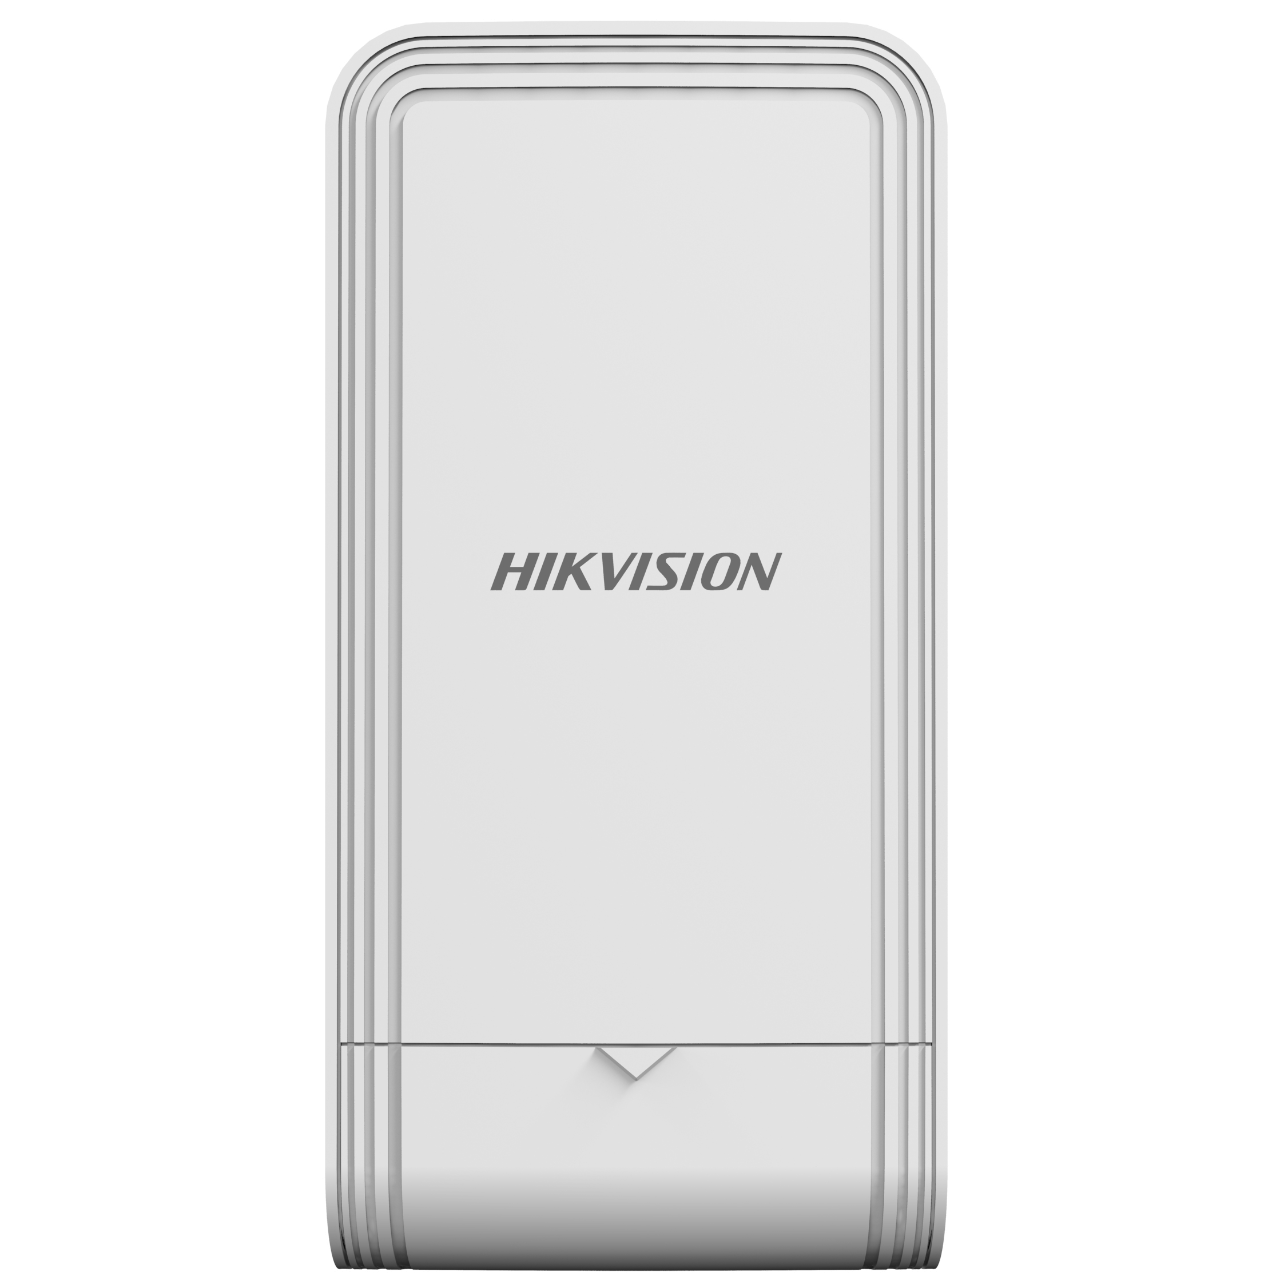 HIKVISION DS-3WF02C-5AC/O - Pont WiFi CPE 5km extérieur 5Ghz 867Mbps -  Série Hikvision Easy IP Pro à Top-Prix sur A-DIRECT. - Avec A-DIRECT ®